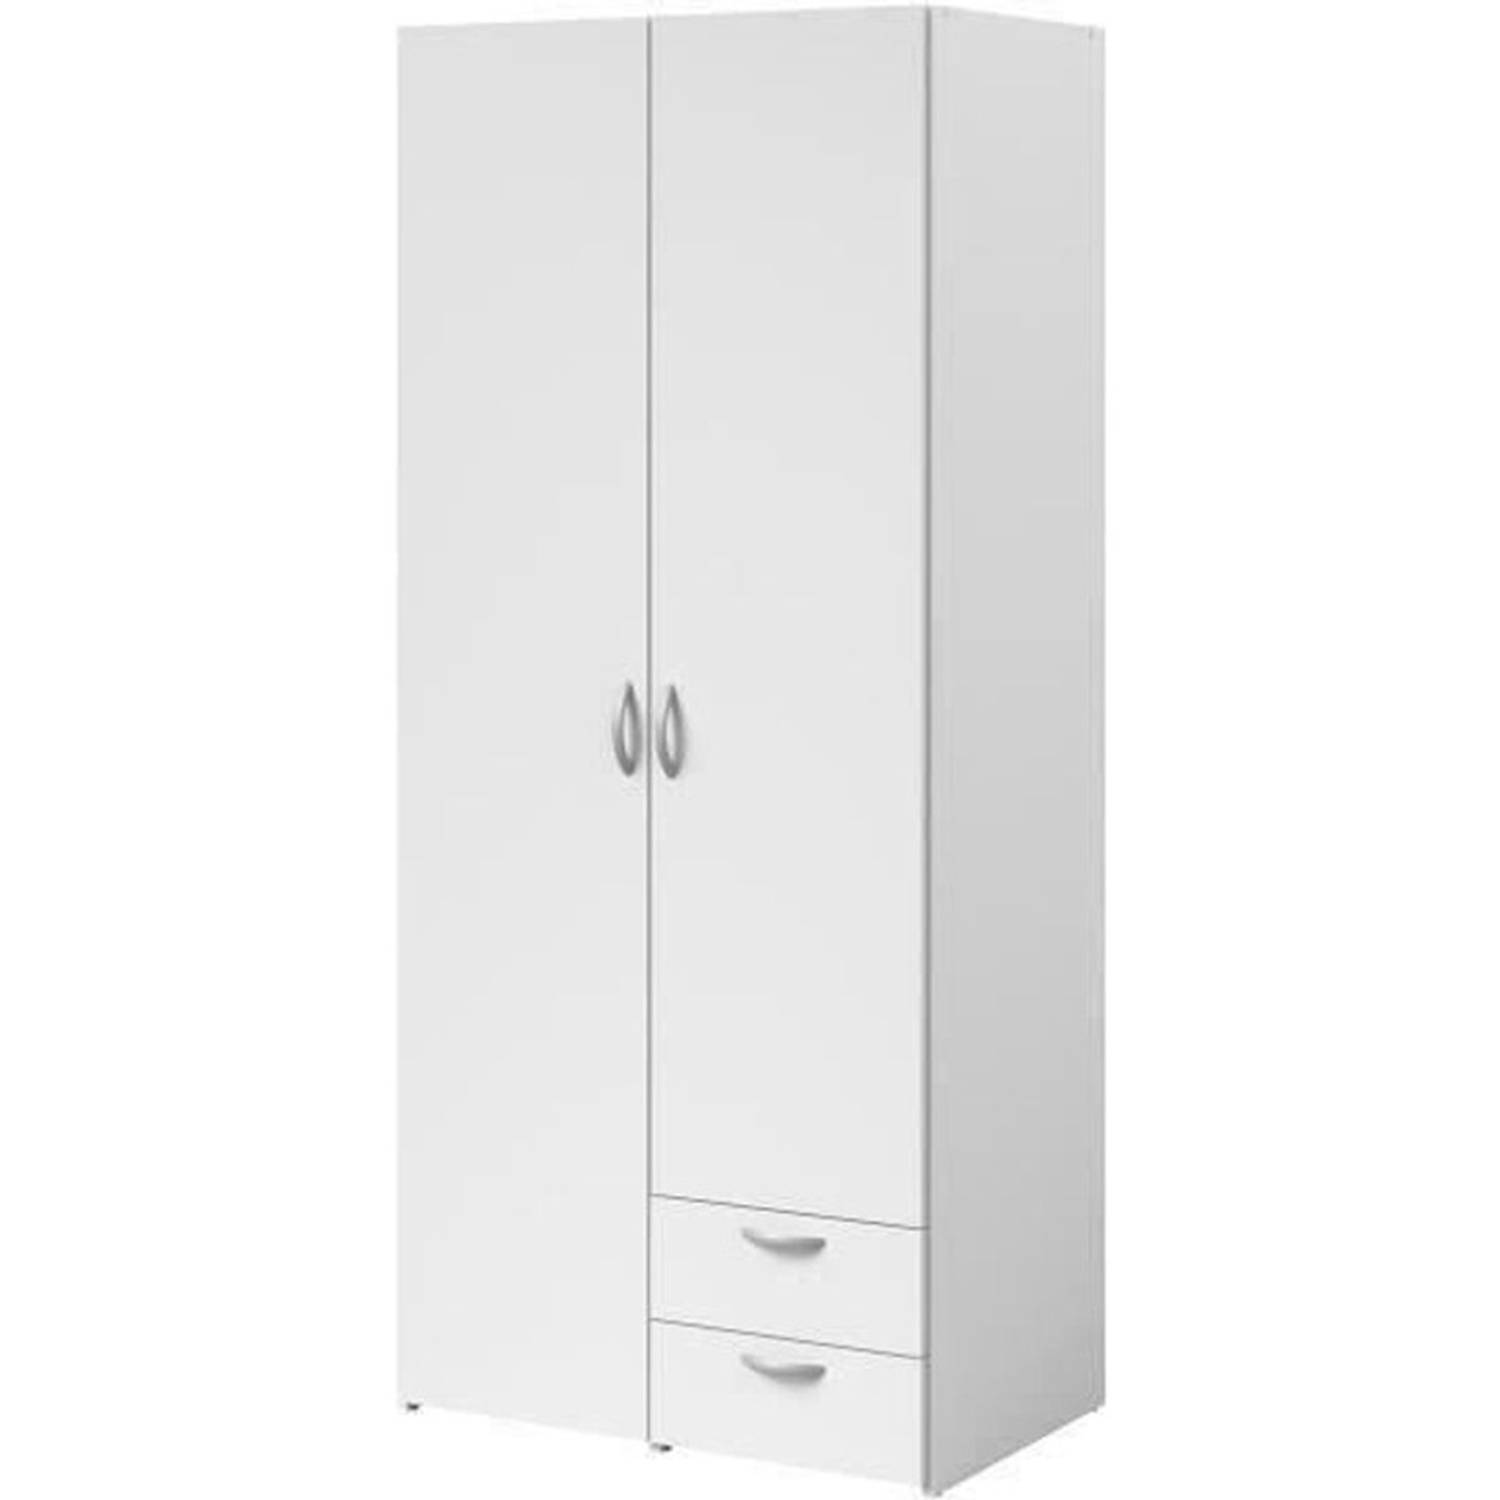 Varia garderobe - Wit decor - 2 scharnierende deuren + 2 laden - L 81 cm x H 185 x d 51 cm - Parisot